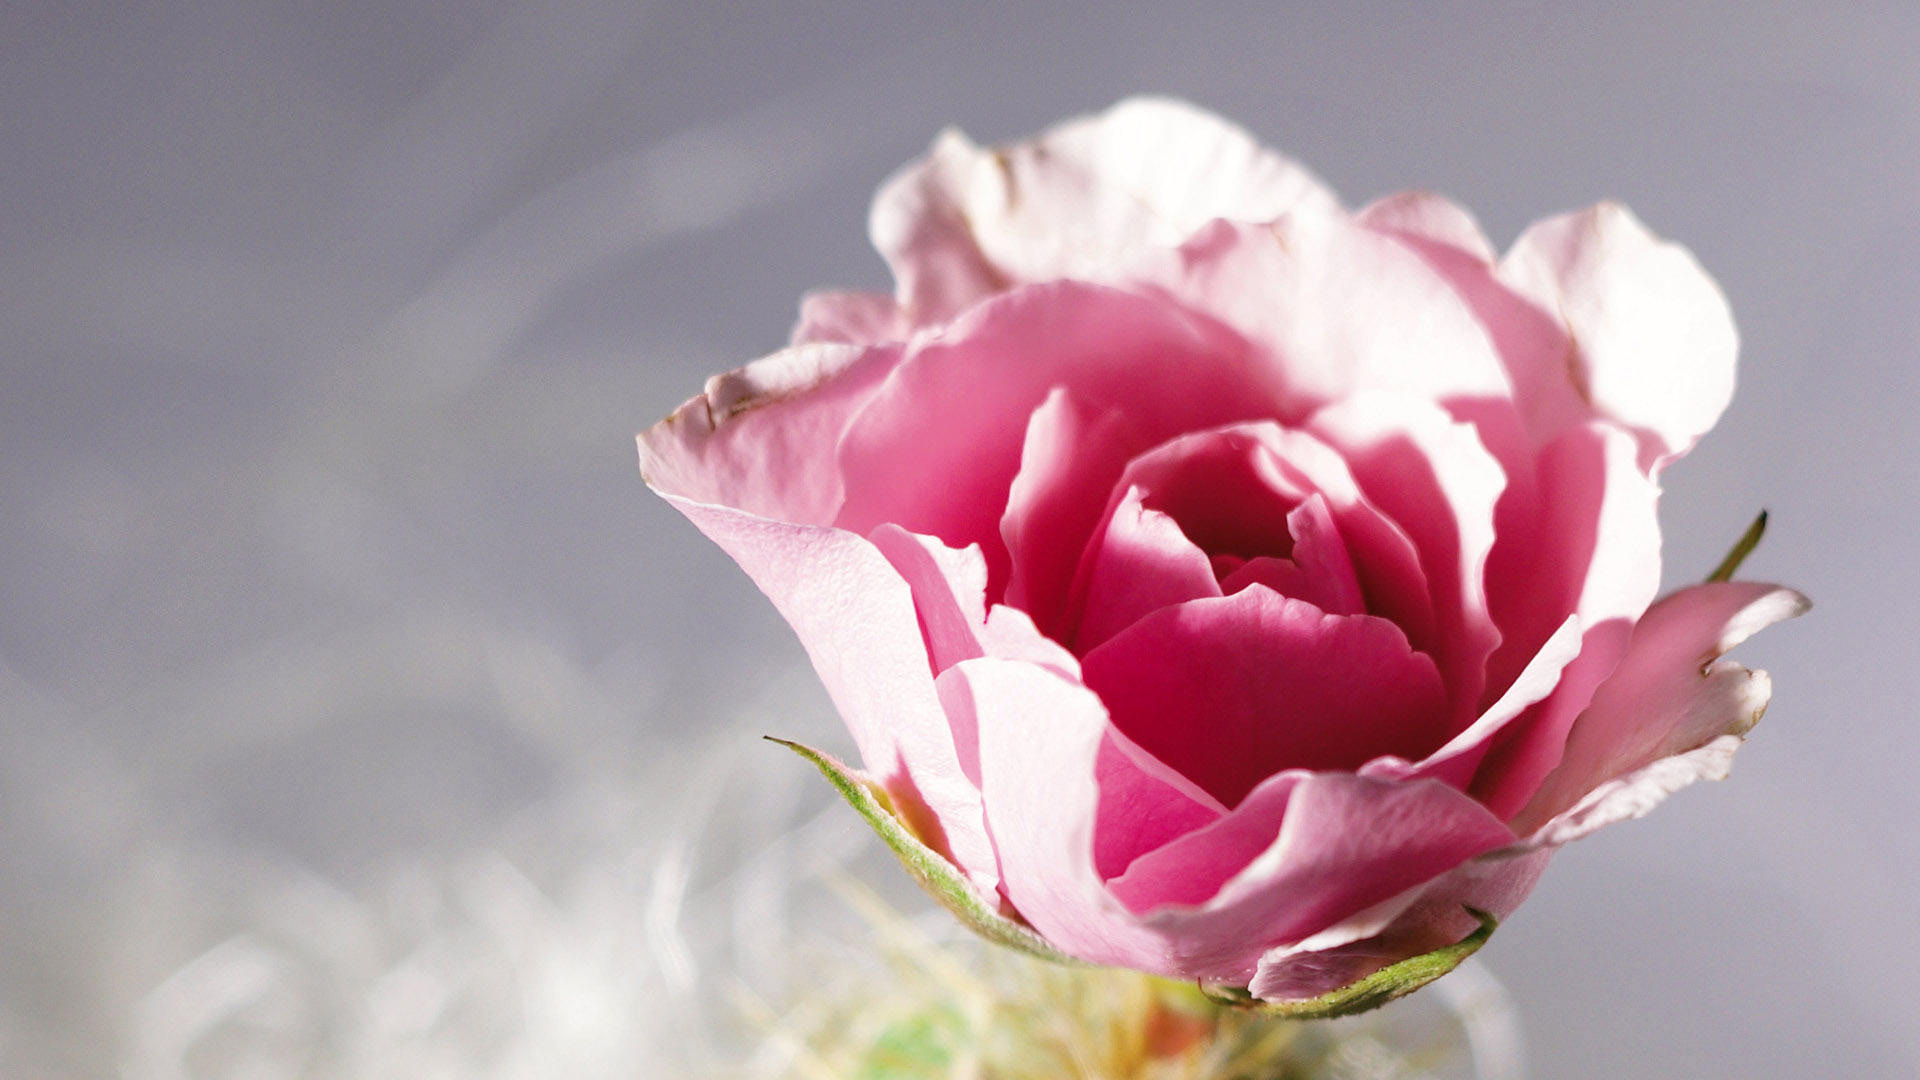 漂亮玫瑰花的图片  高清艳丽玫瑰图片大全